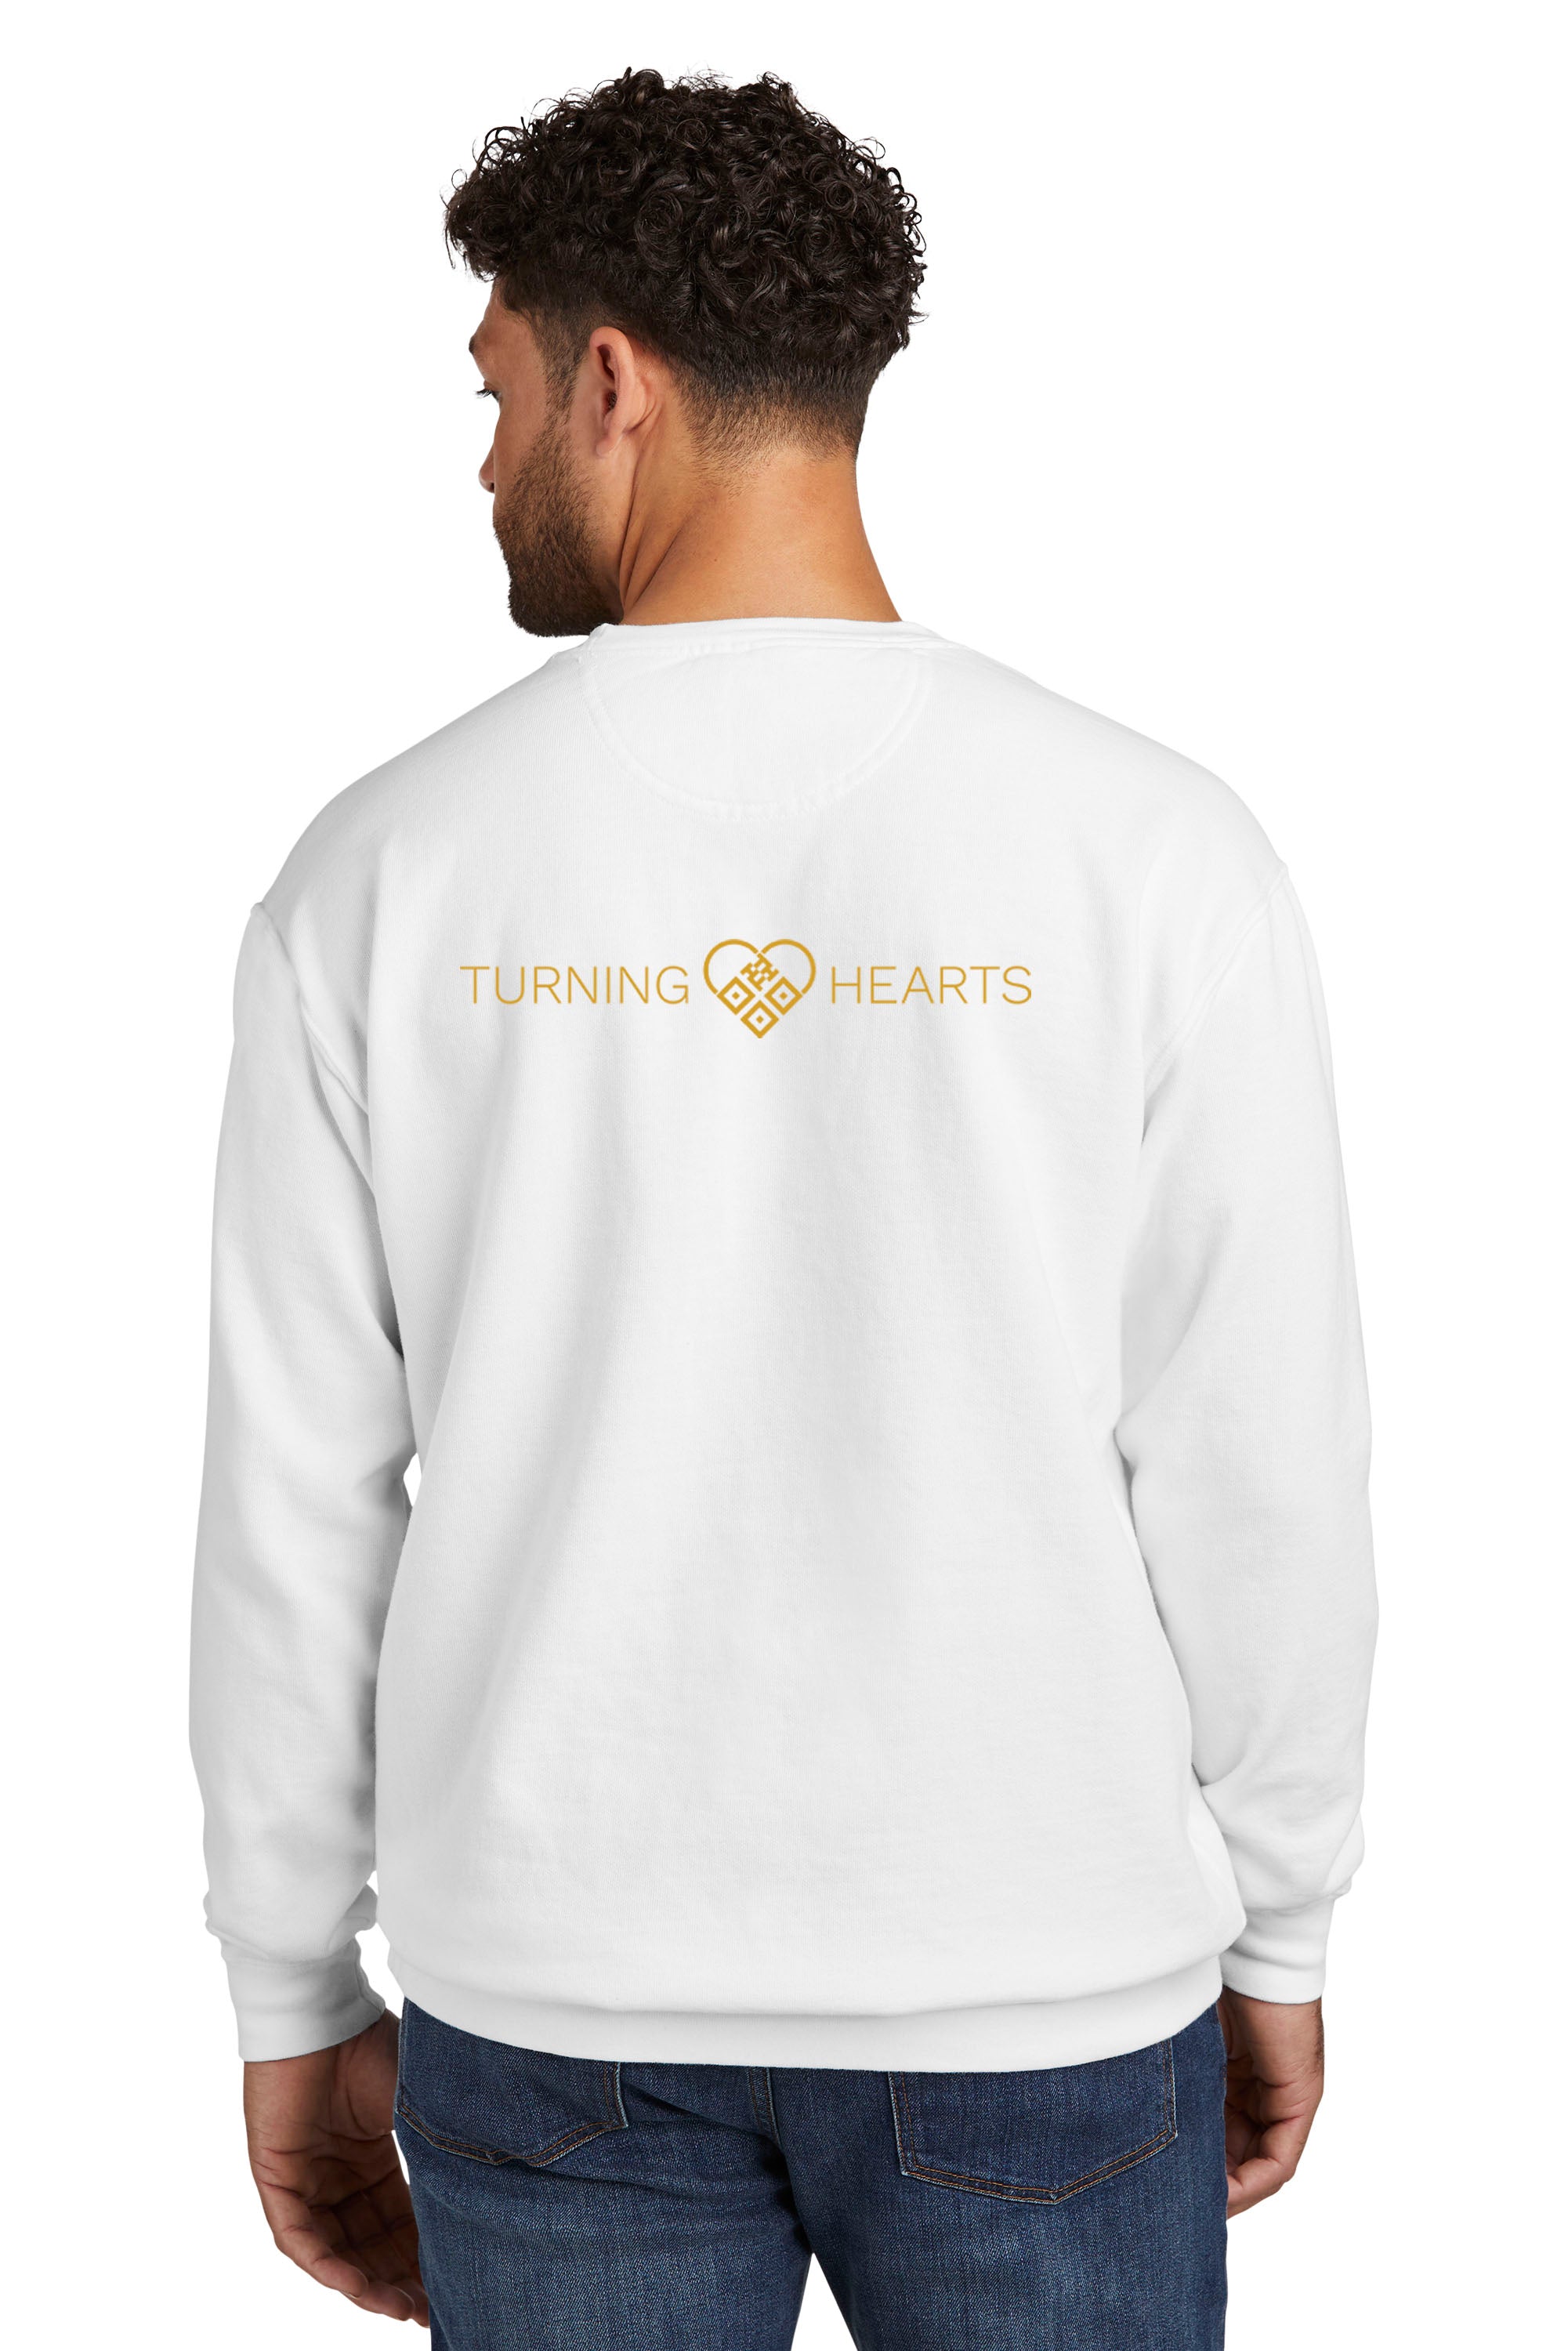 Turning Hearts (Heart Logo) Crewneck Sweatshirt